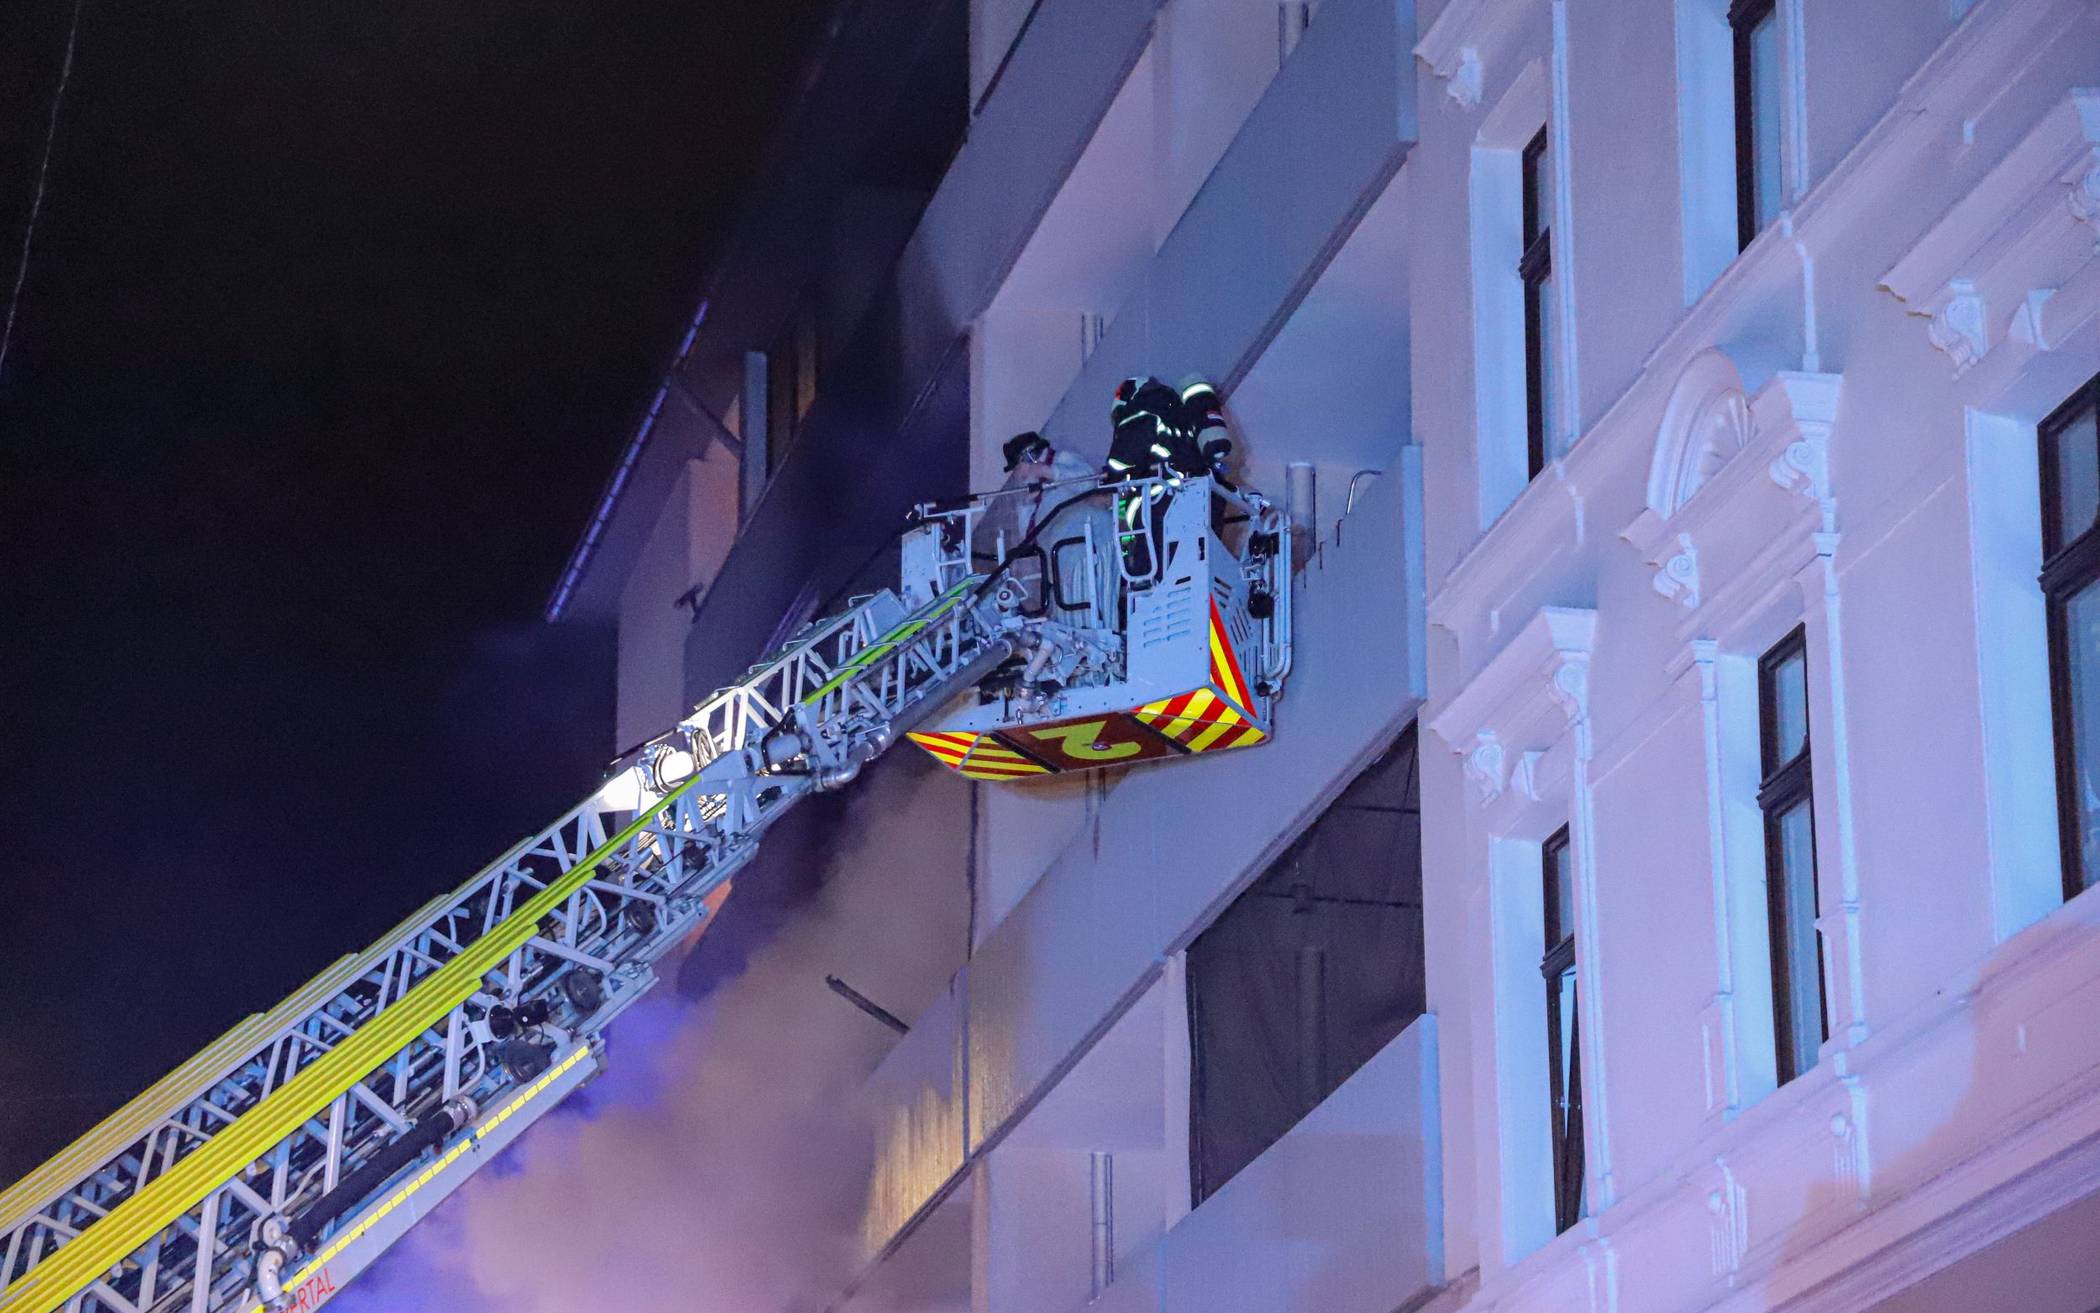 Feuerwehr rettet Menschen aus brennendem Haus